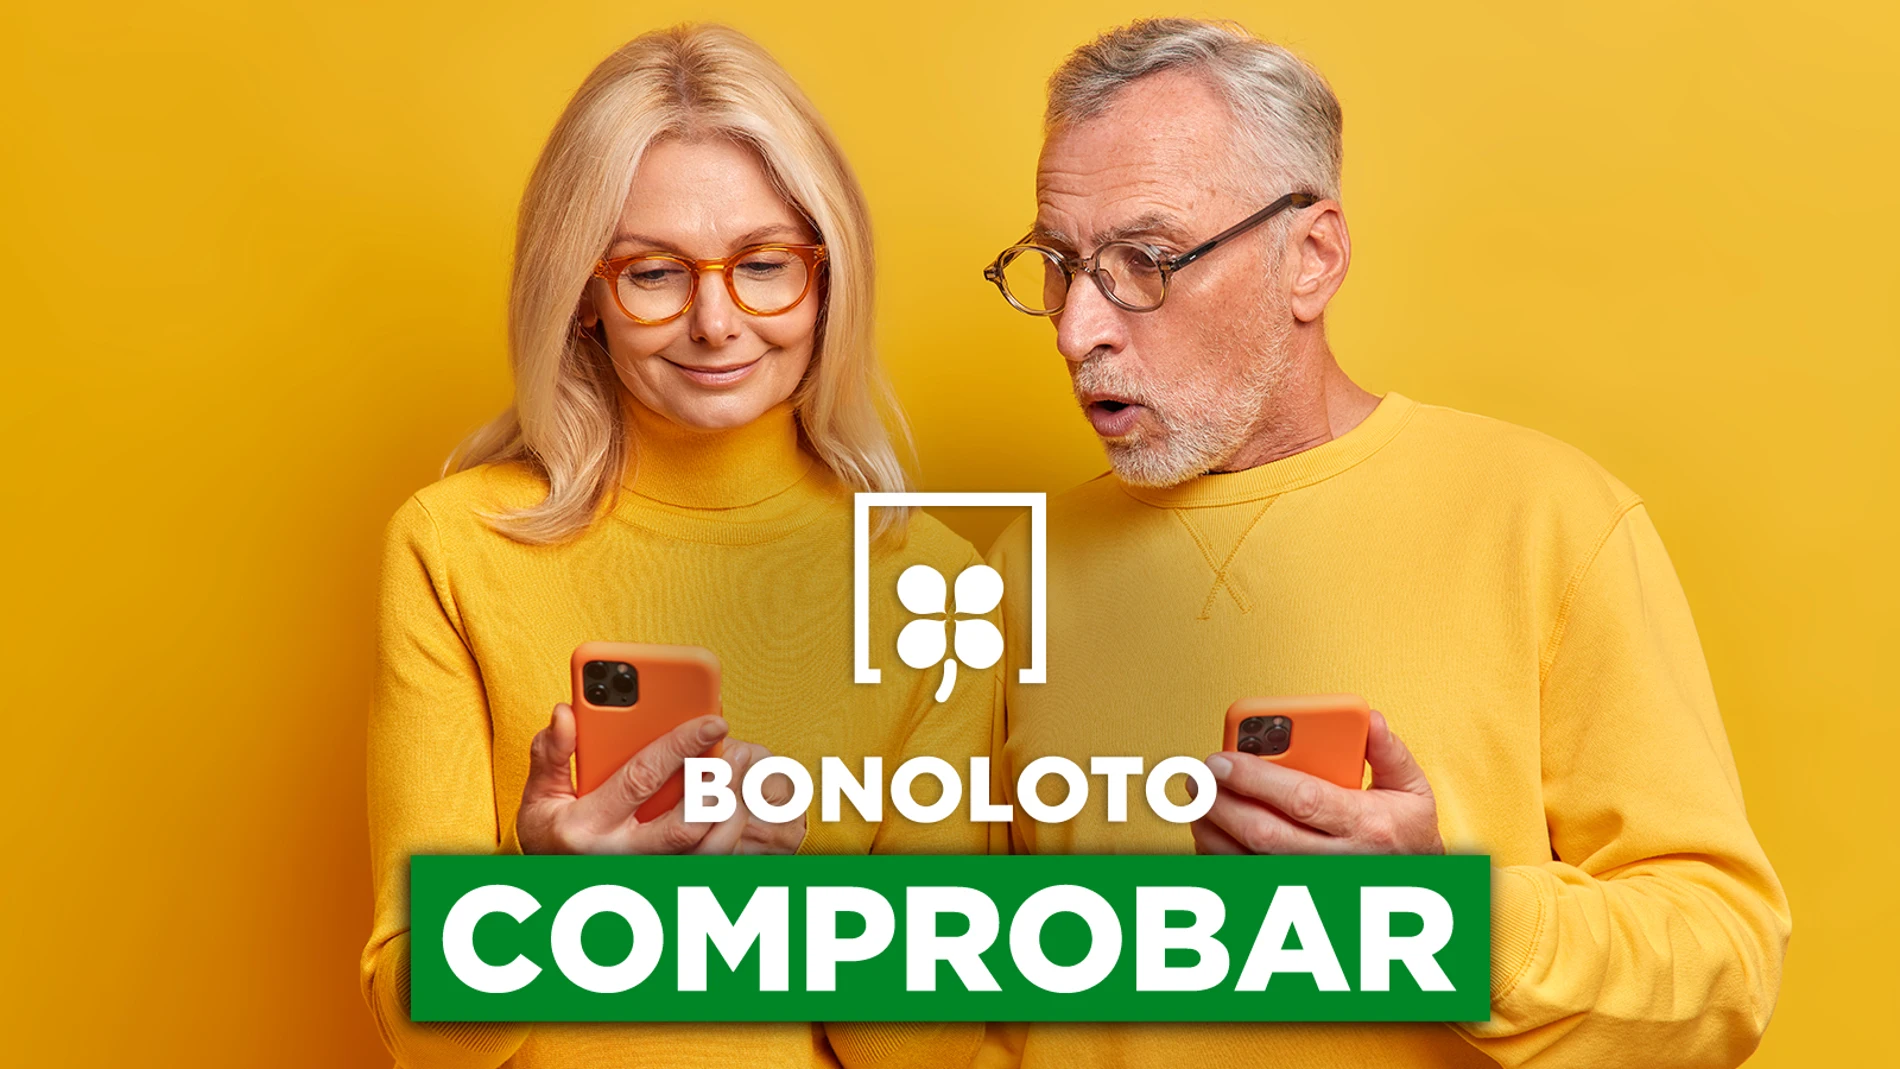 Bonoloto: comprobar hoy, viernes 15 de abril de 2022